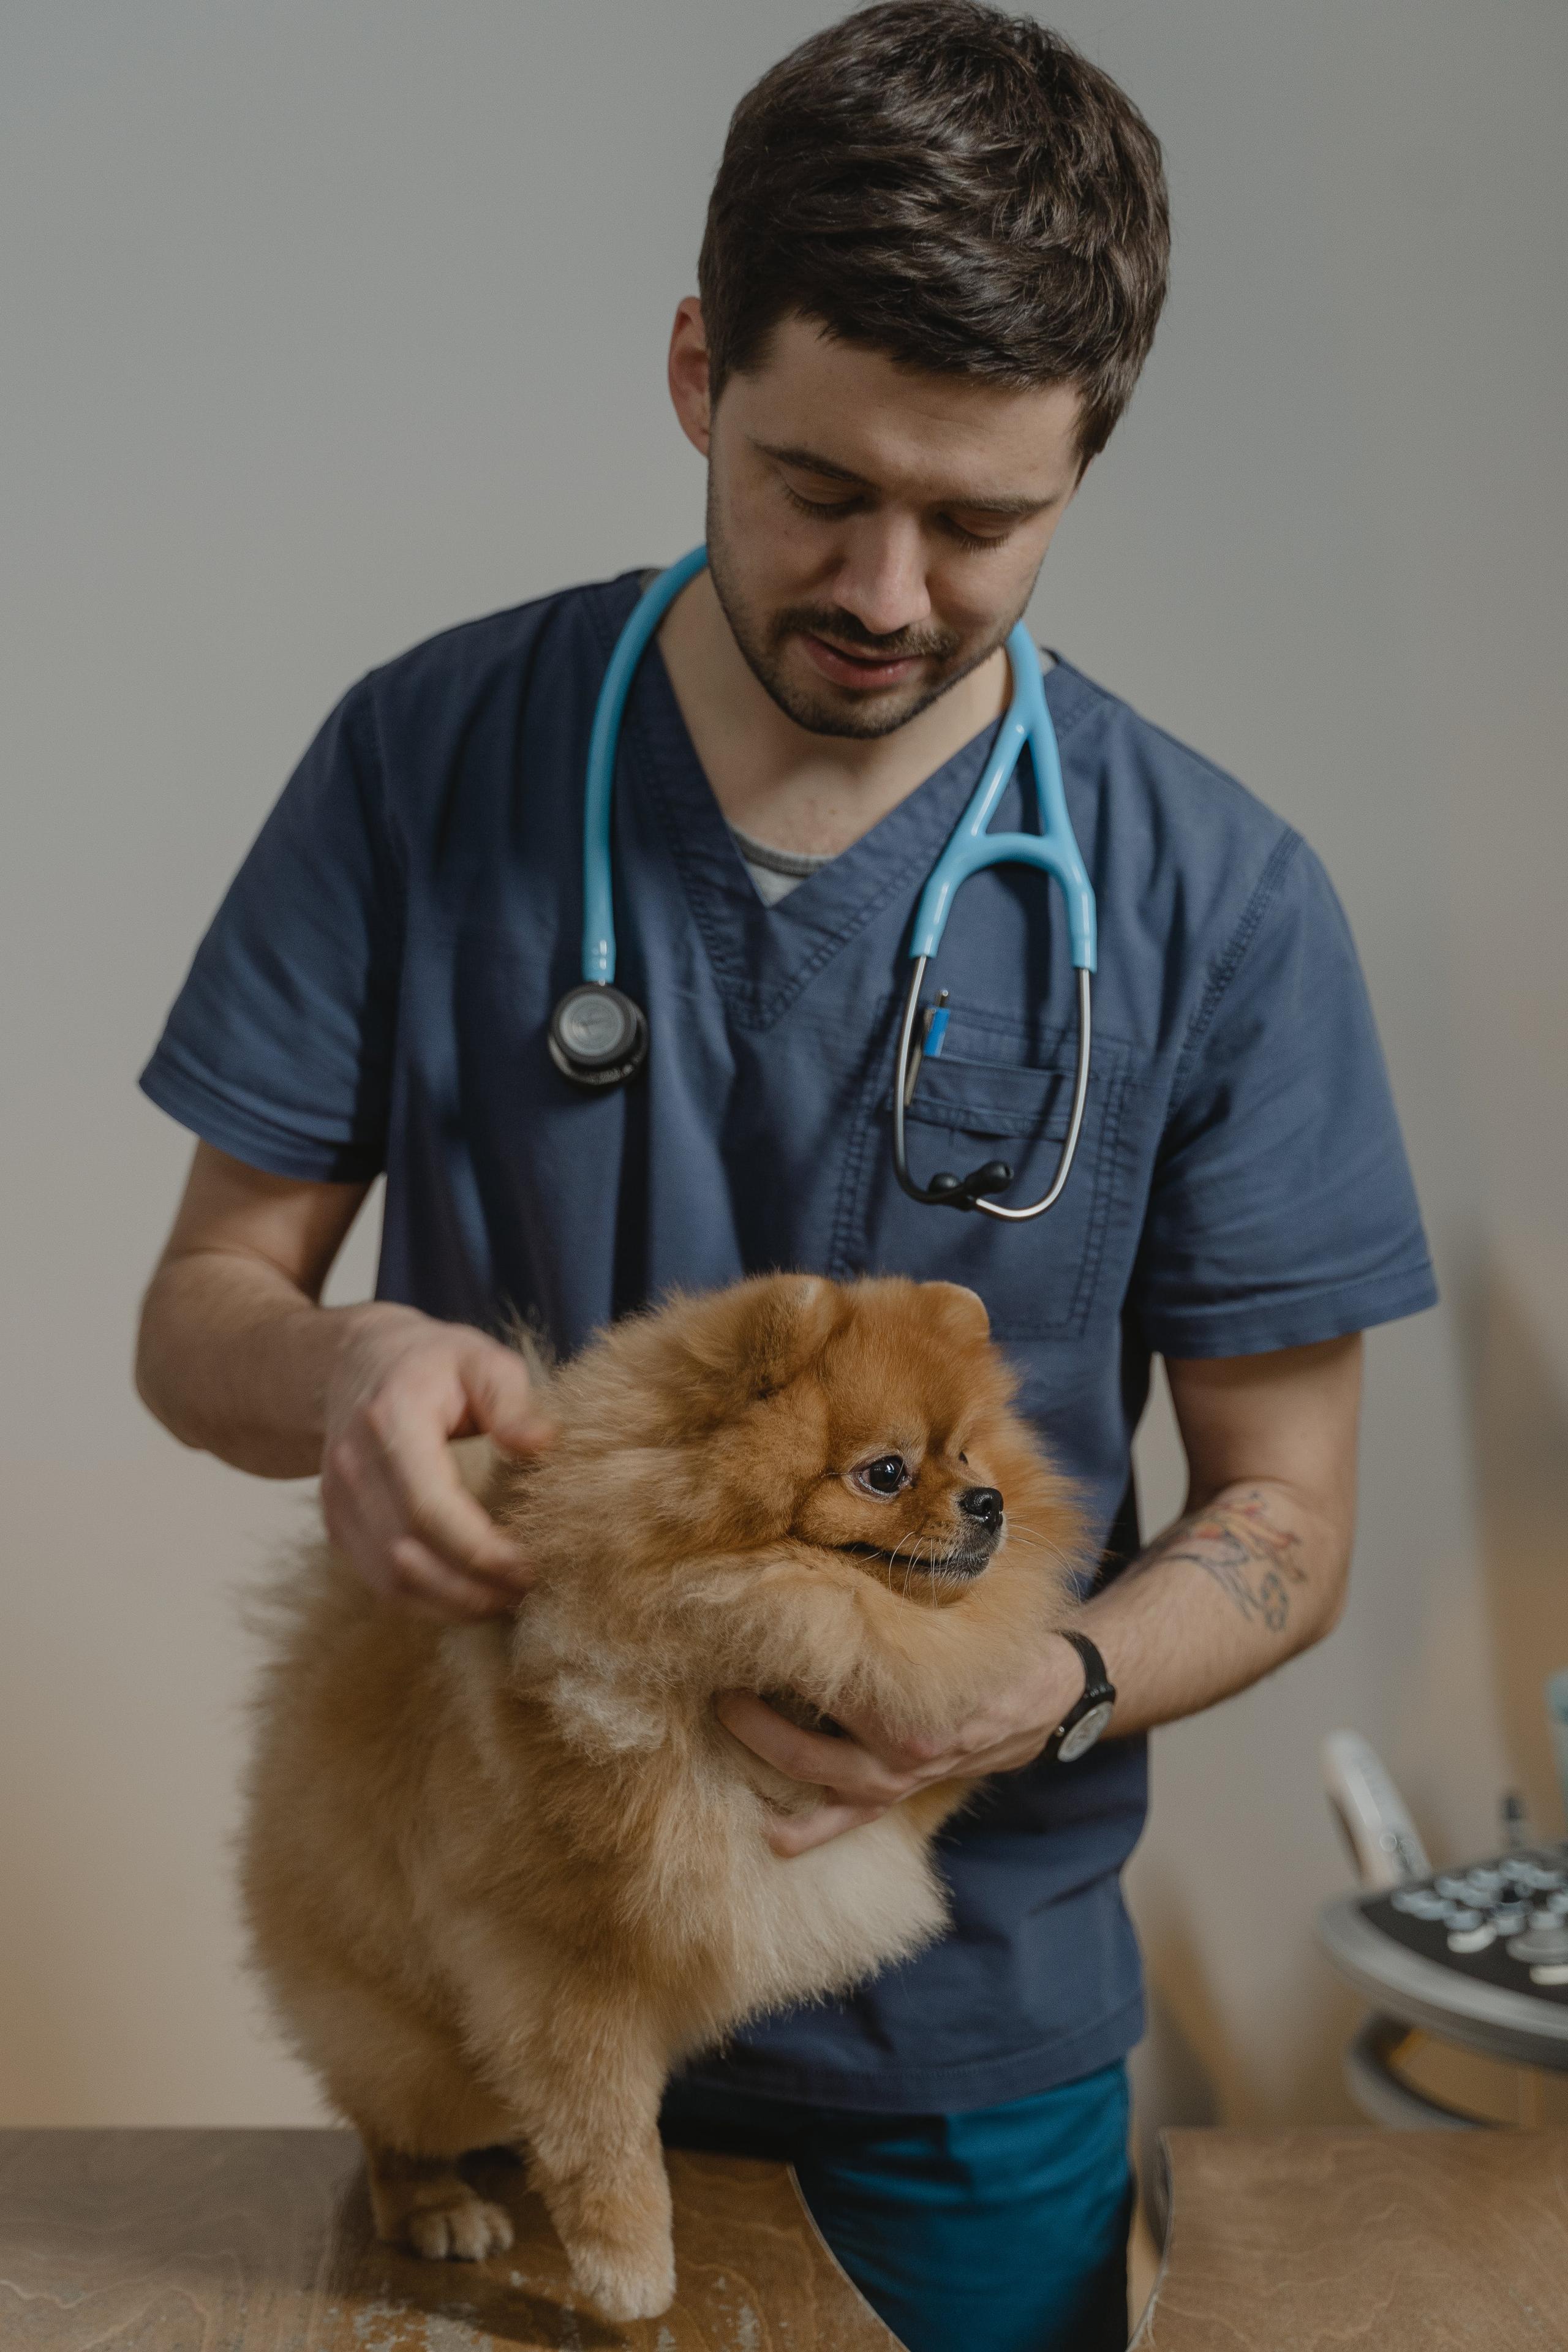 Preparare la visita dal veterinario